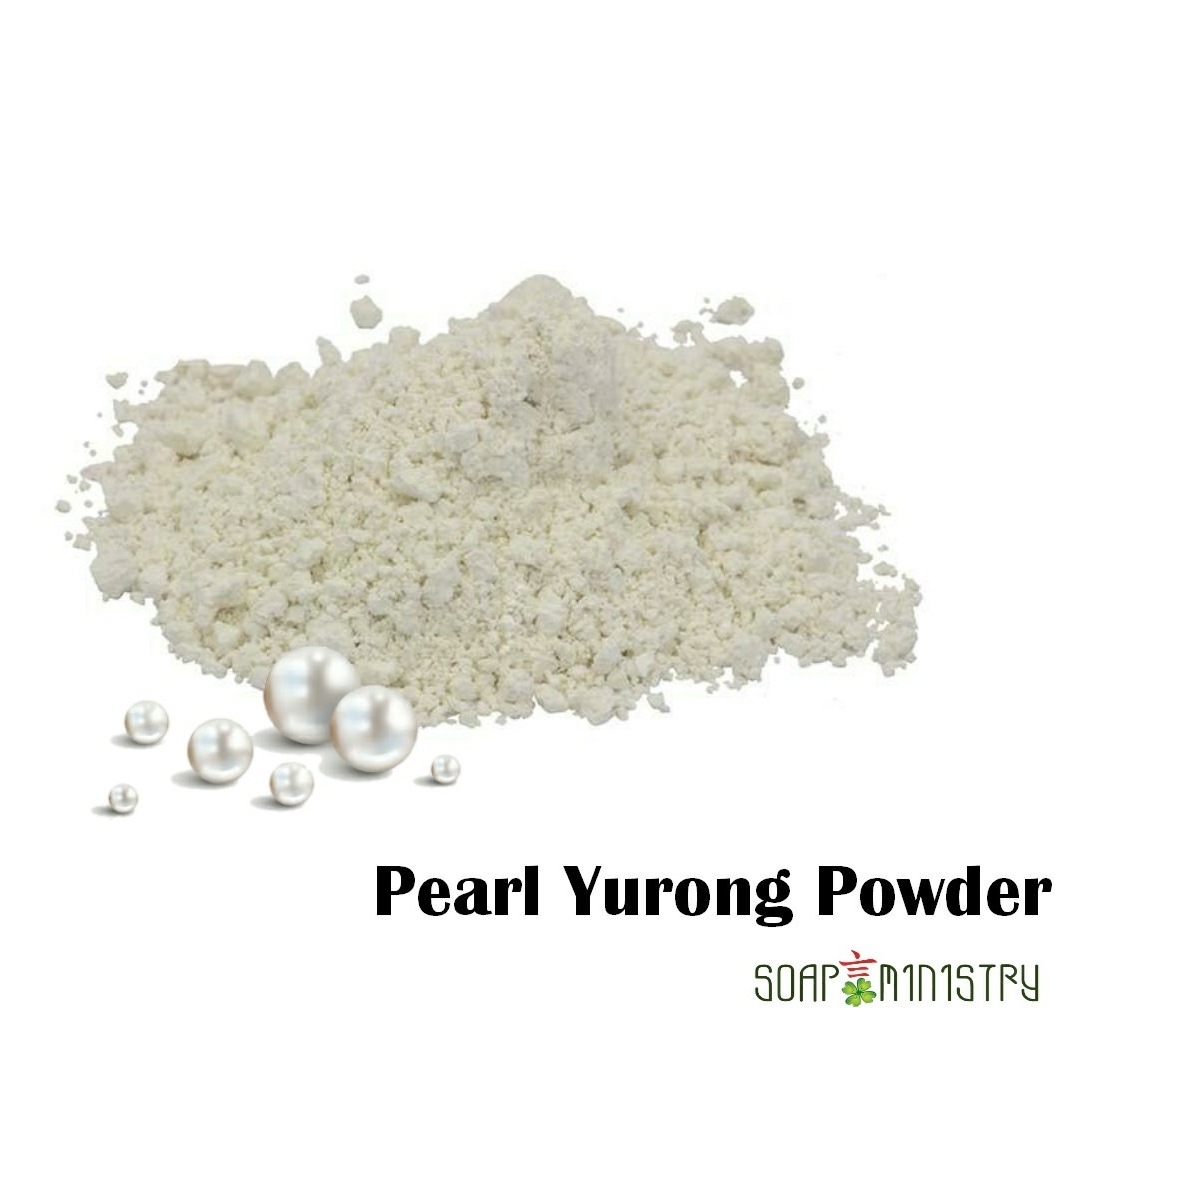 Pearl Yurong Powder 500g